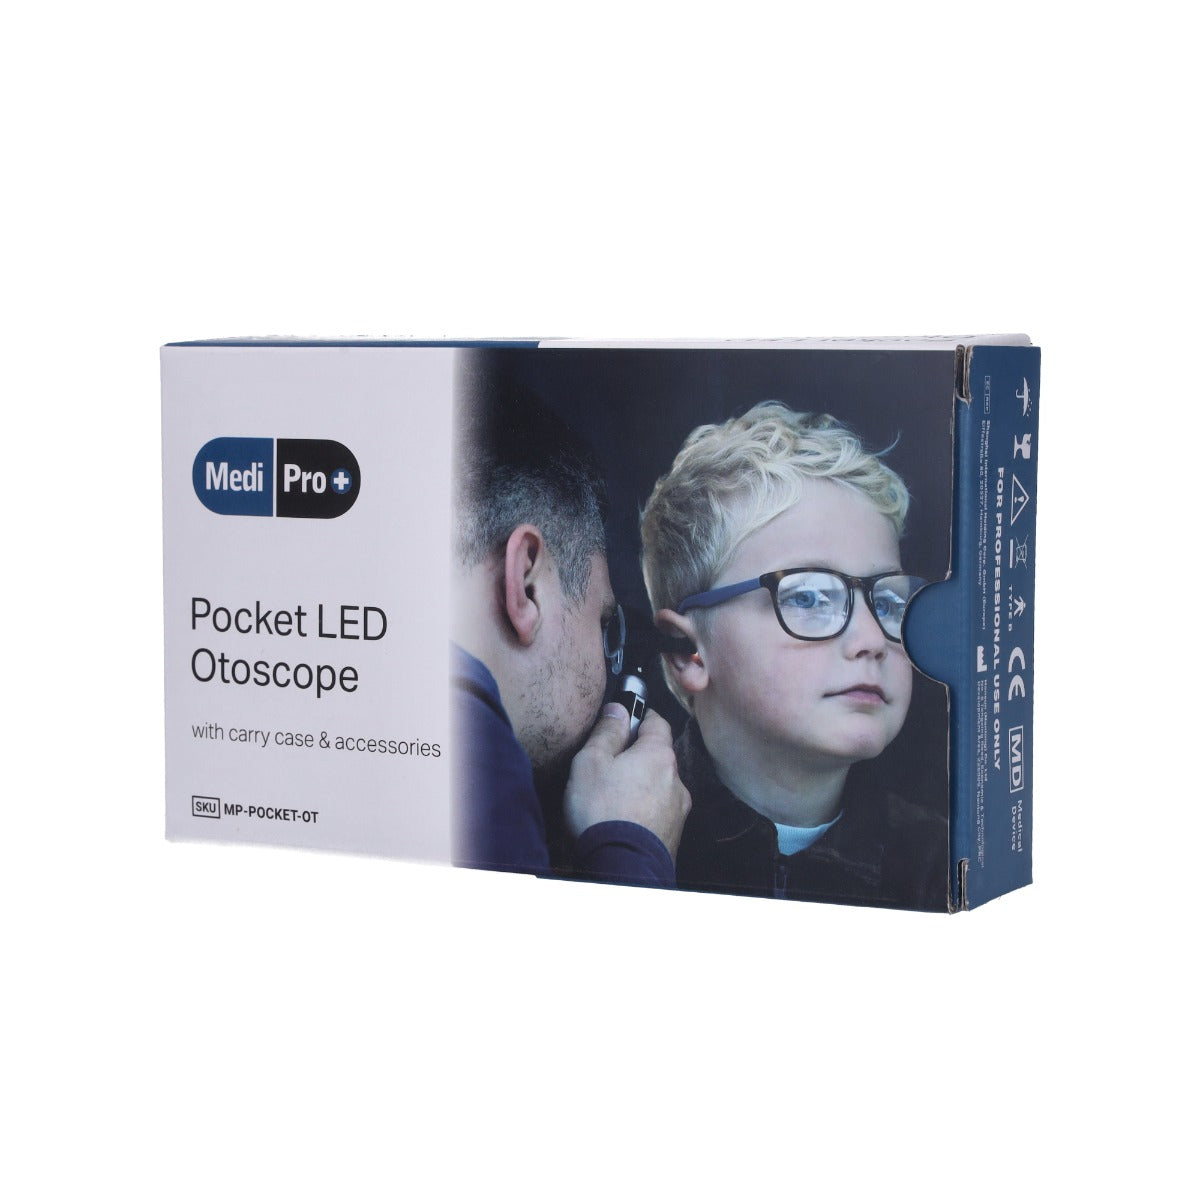 Pocket LED Otoscope